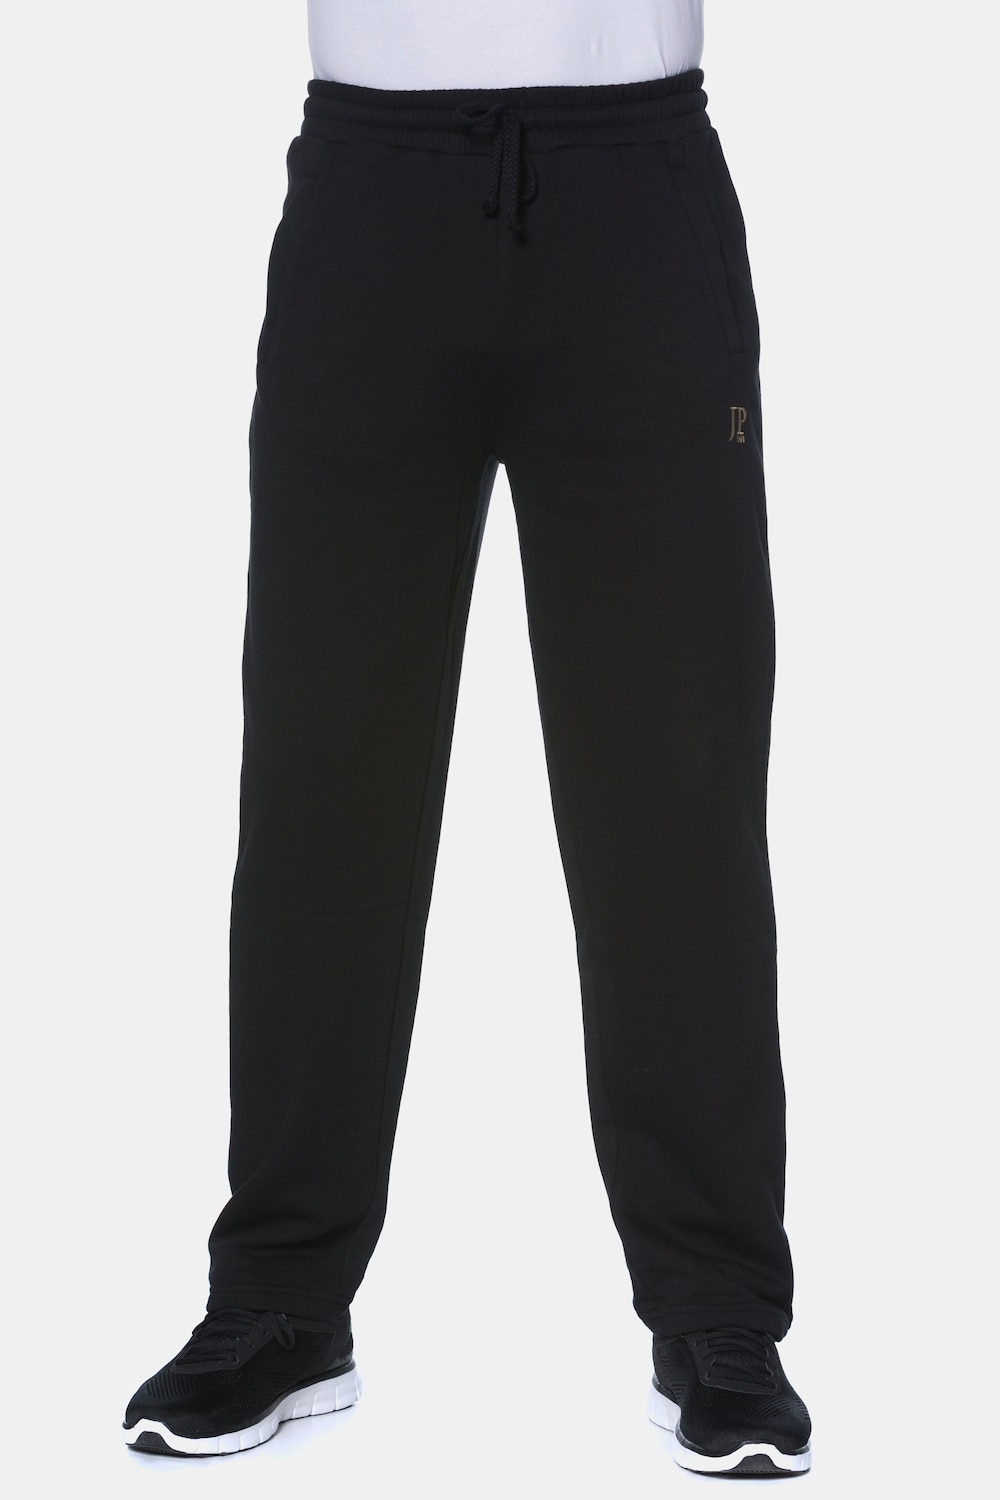 Große Größen Jogginghose, Herren, schwarz, Größe: 5XL, Baumwolle/Polyester, JP1880 von JP1880